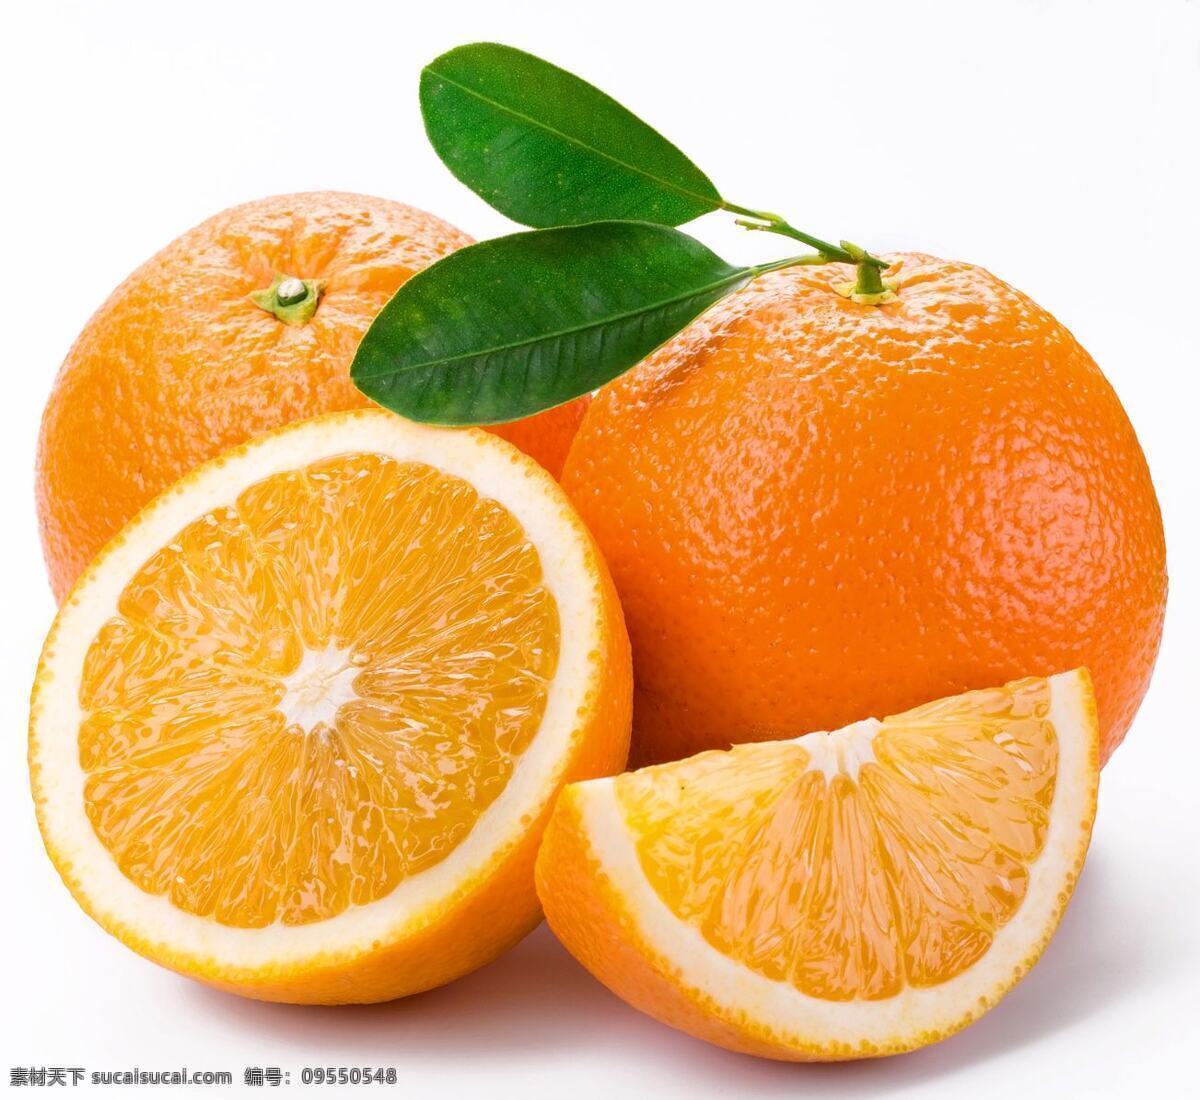 云南 玉溪 老树冰糖橙 酸甜可口 橙子 橘子 水果 柑桔 赣南脐橙 商超 超市 白背景 新鲜 健康 食品 有机 饮食 自然 素食 超市设计 生物世界